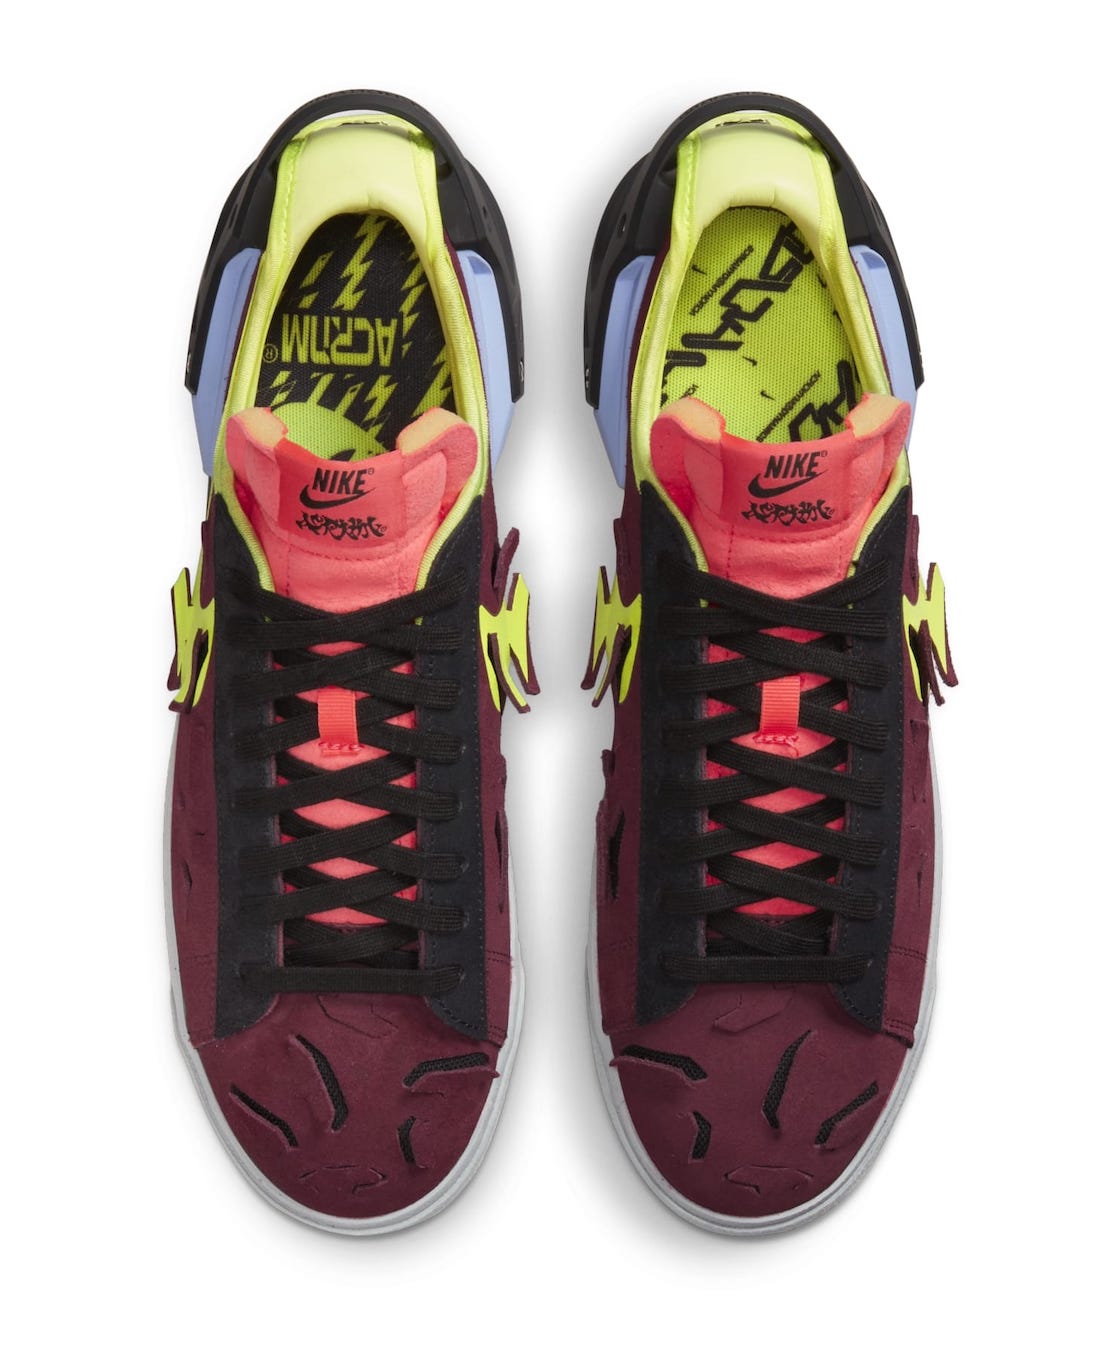 Acronym x Nike Blazer Low Night Maroon DN2067-600 Release Date